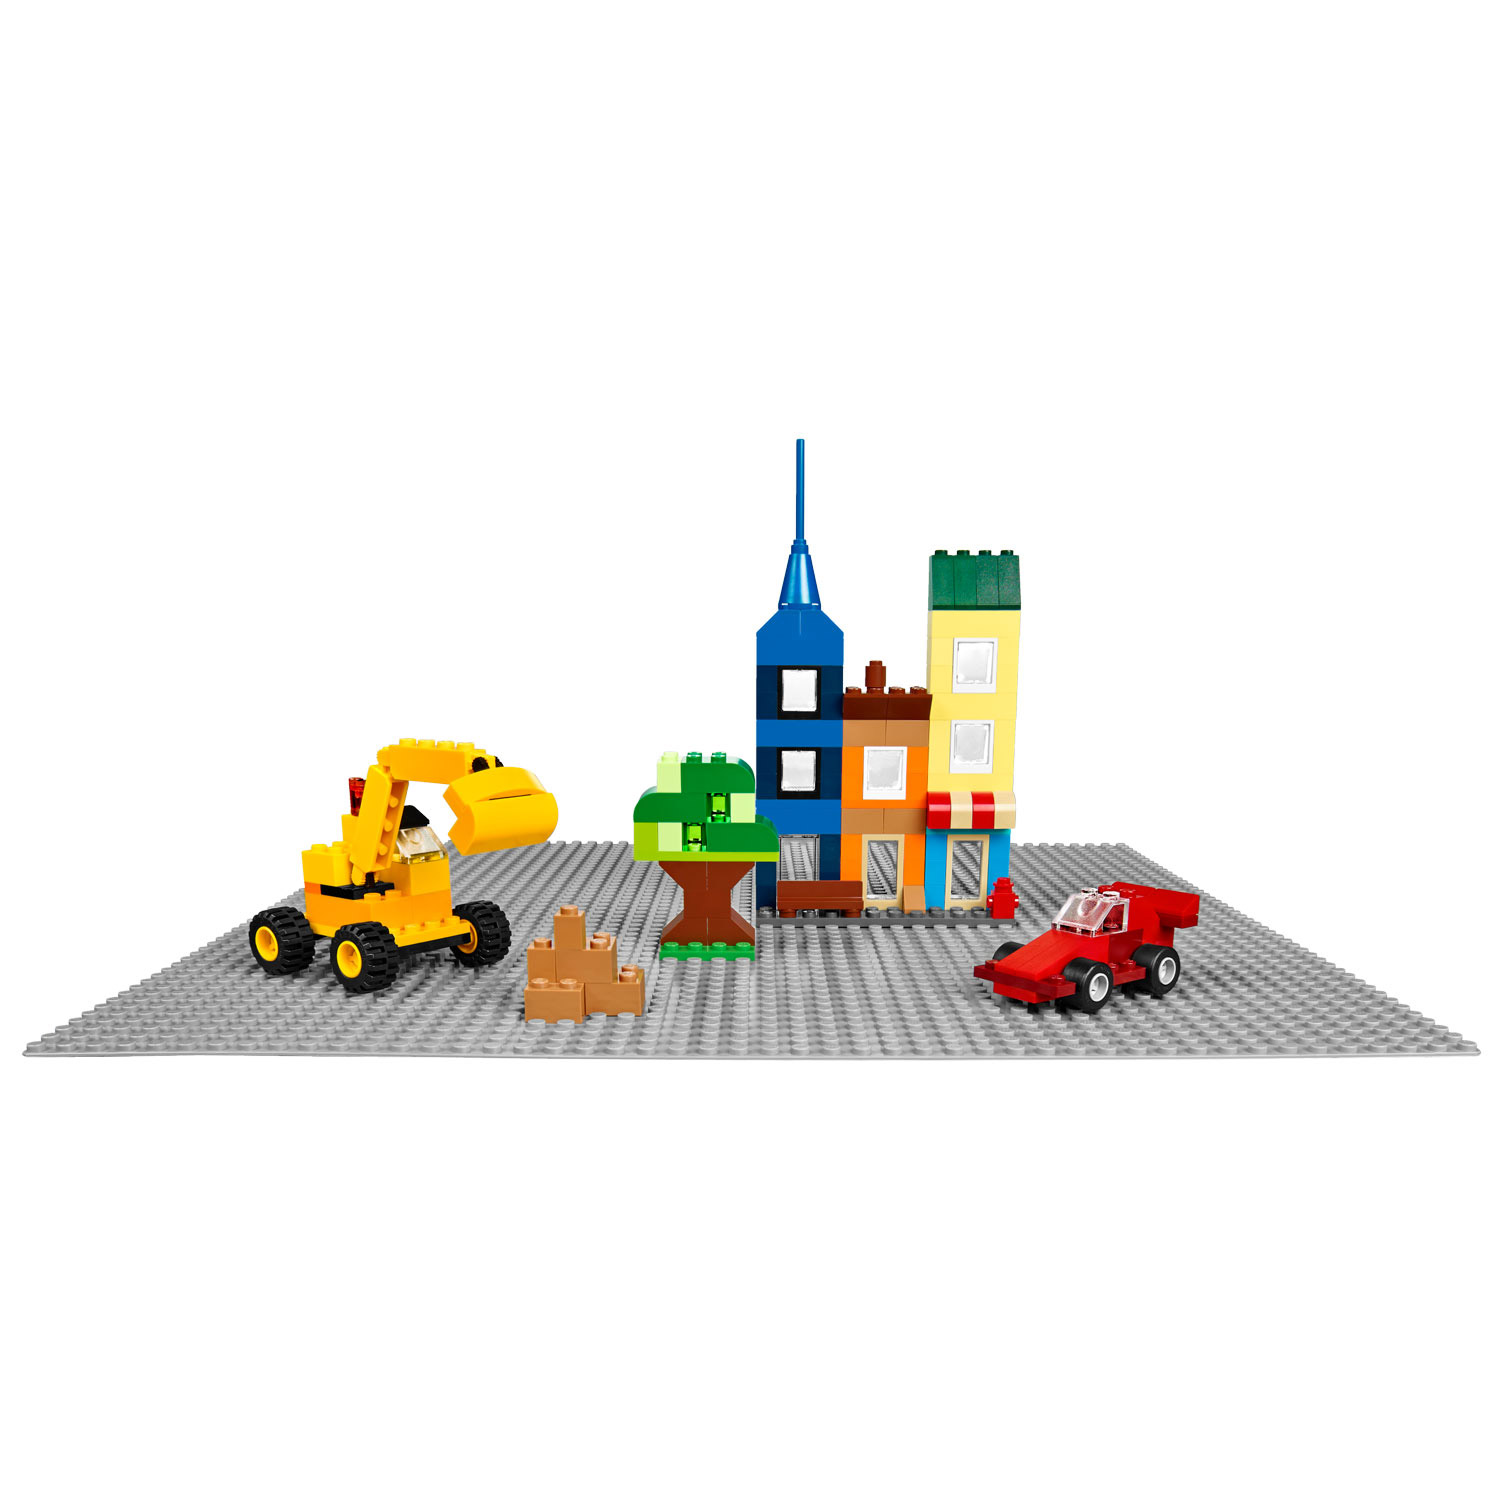 Set complet de plaques de route adaptées pour LEGO - 4 pièces